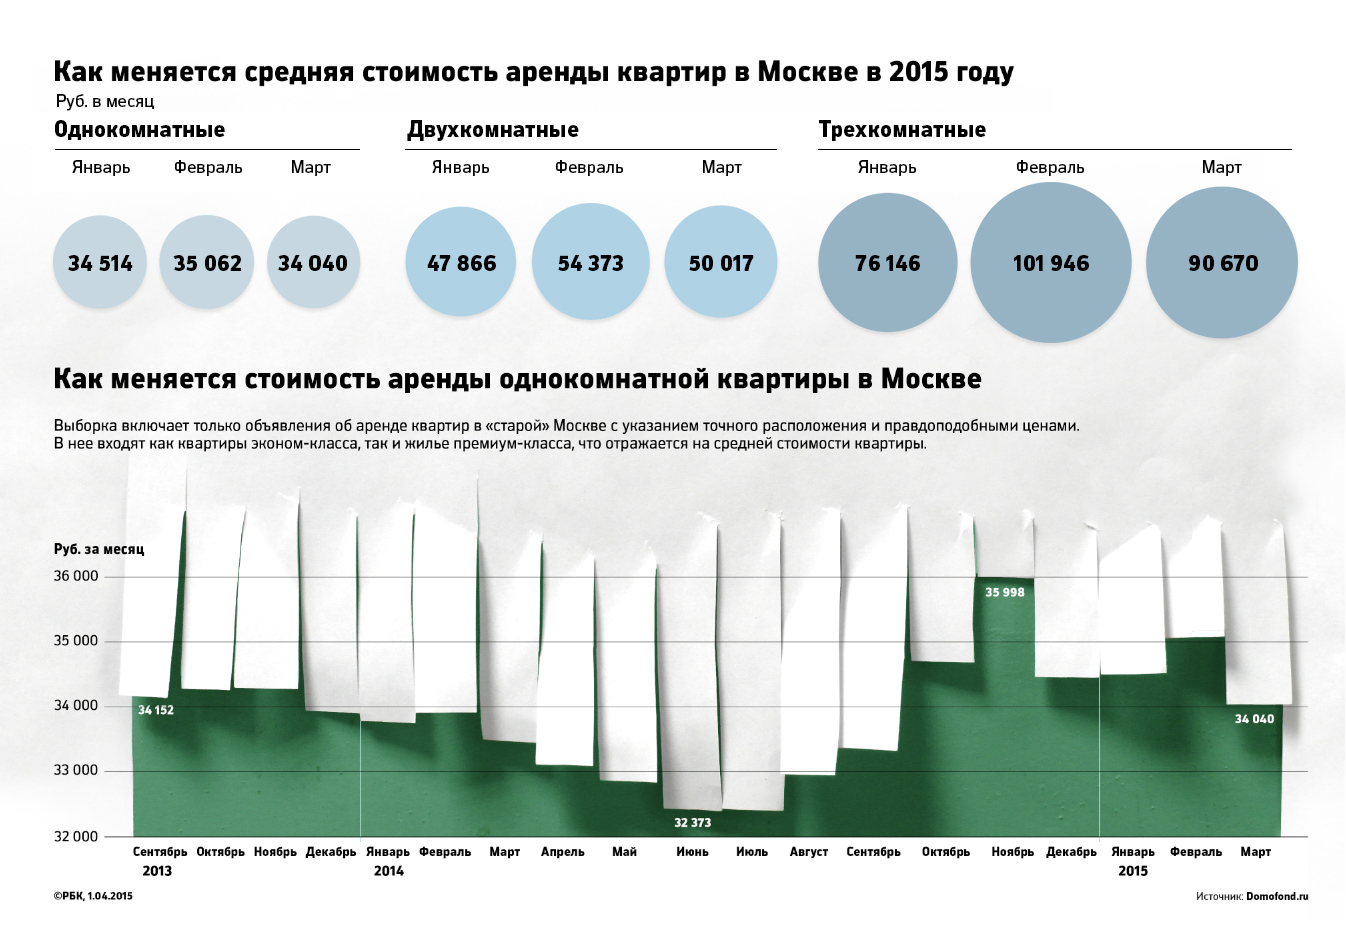 Стоимость аренды однокомнатных квартир в Москве упала до 20 тыс. руб.